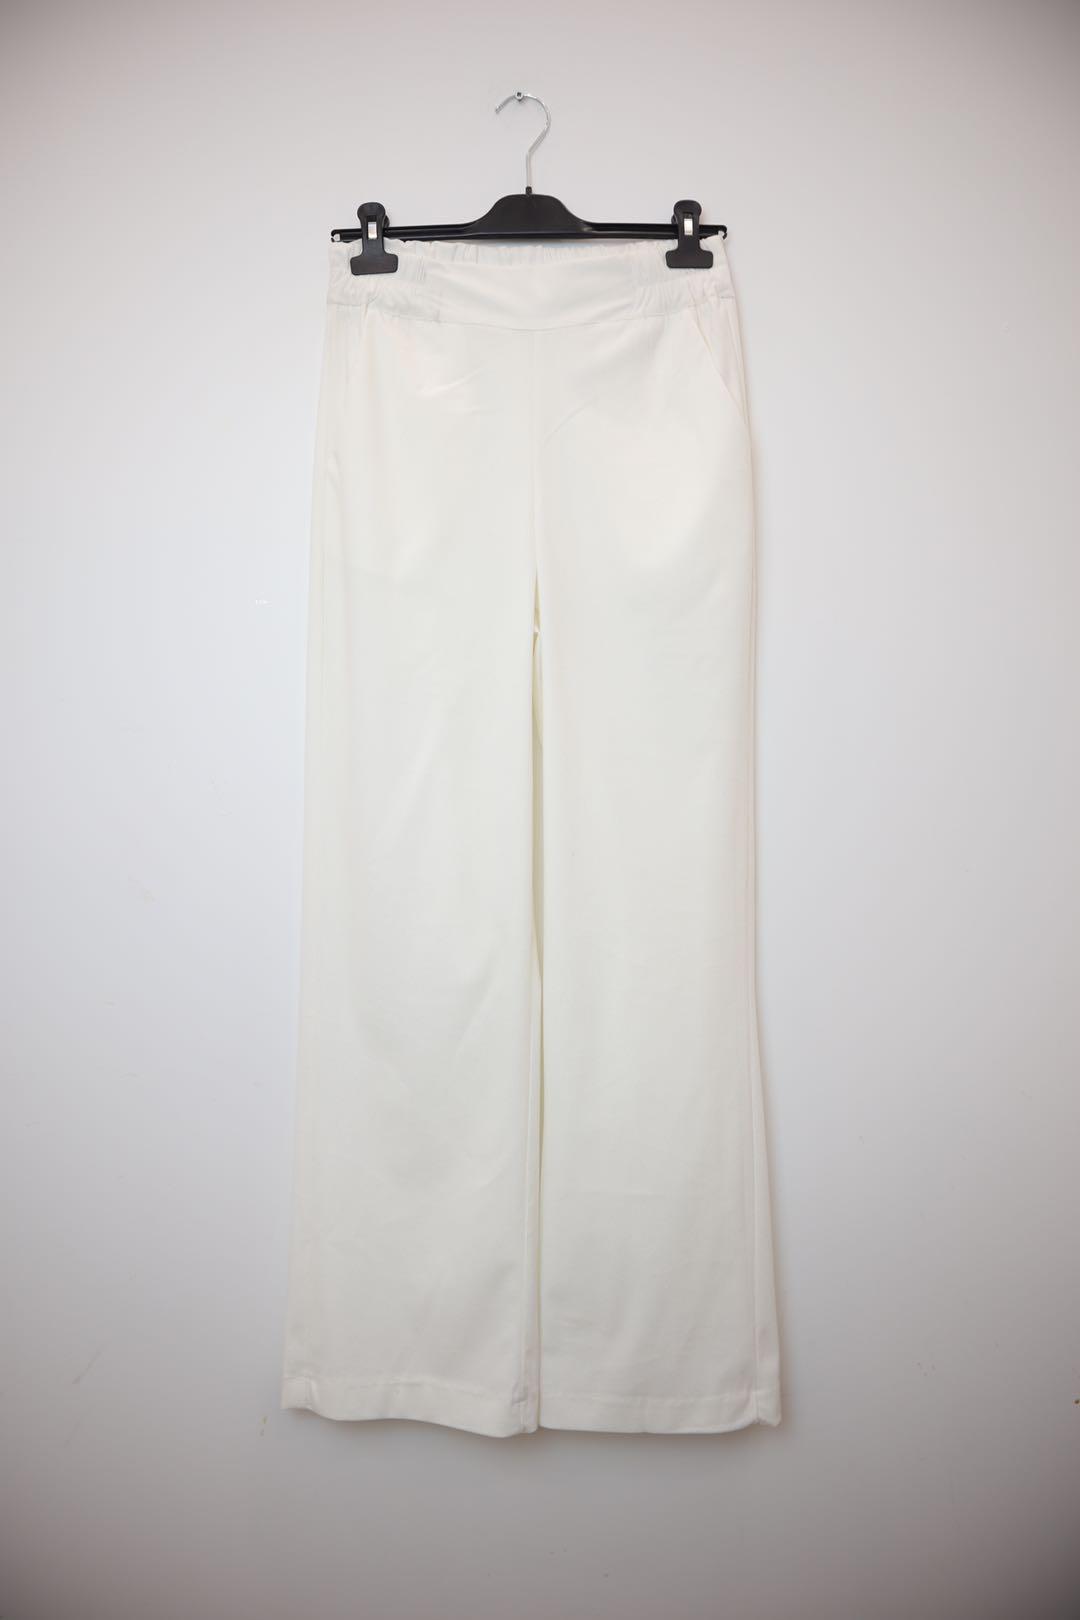 Pantalons Femme Blanc MODERN FASHION  VELVET #c Efashion Paris